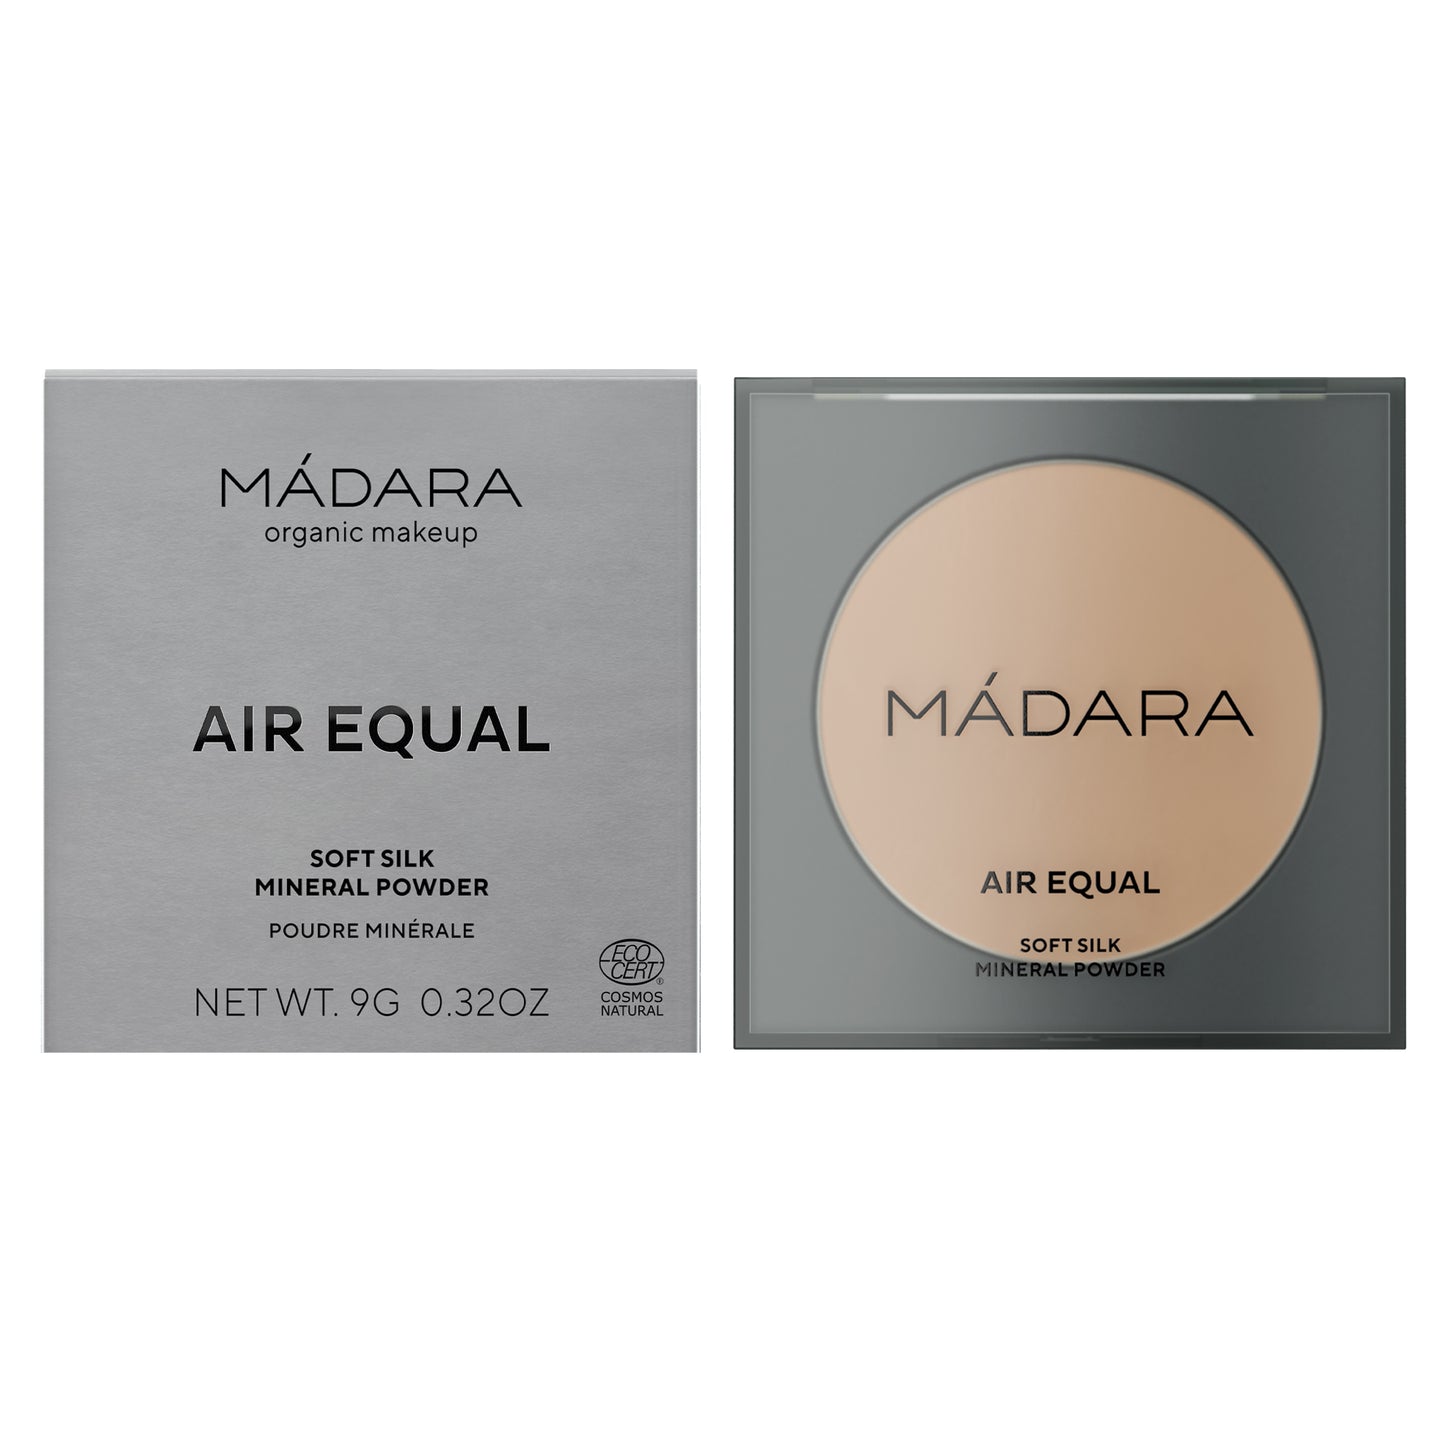 MADARA - AIR EQUAL soft silk mineral powder 9g